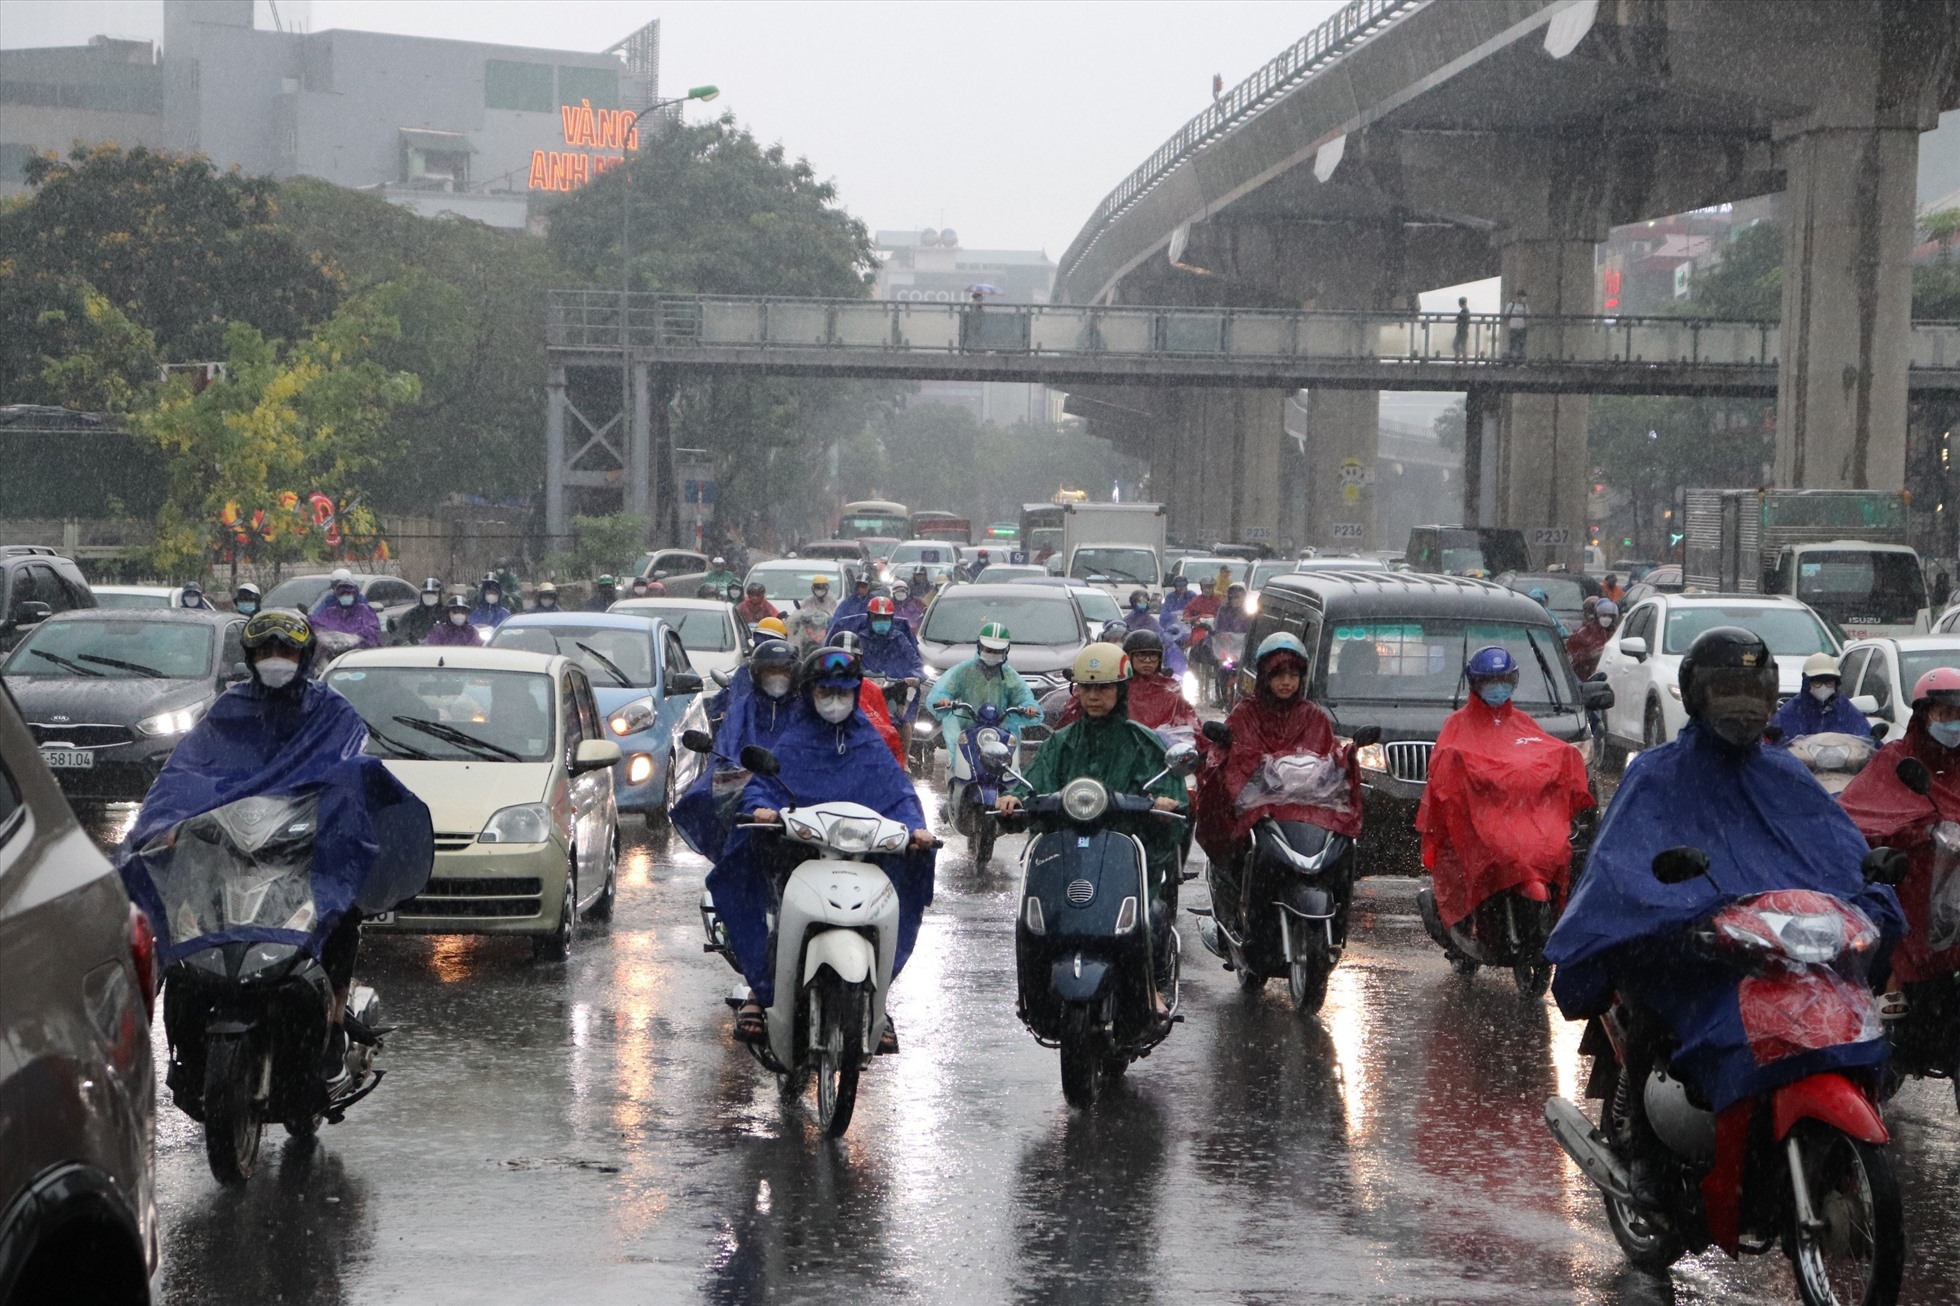 Và các tuyến đường như Hồ Tùng Mậu, Phạm Hùng, vành đai 3 giao thông cũng ùn ứ cục bộ tắc nghẽn cục bộ do thời tiết mưa nặng hạt